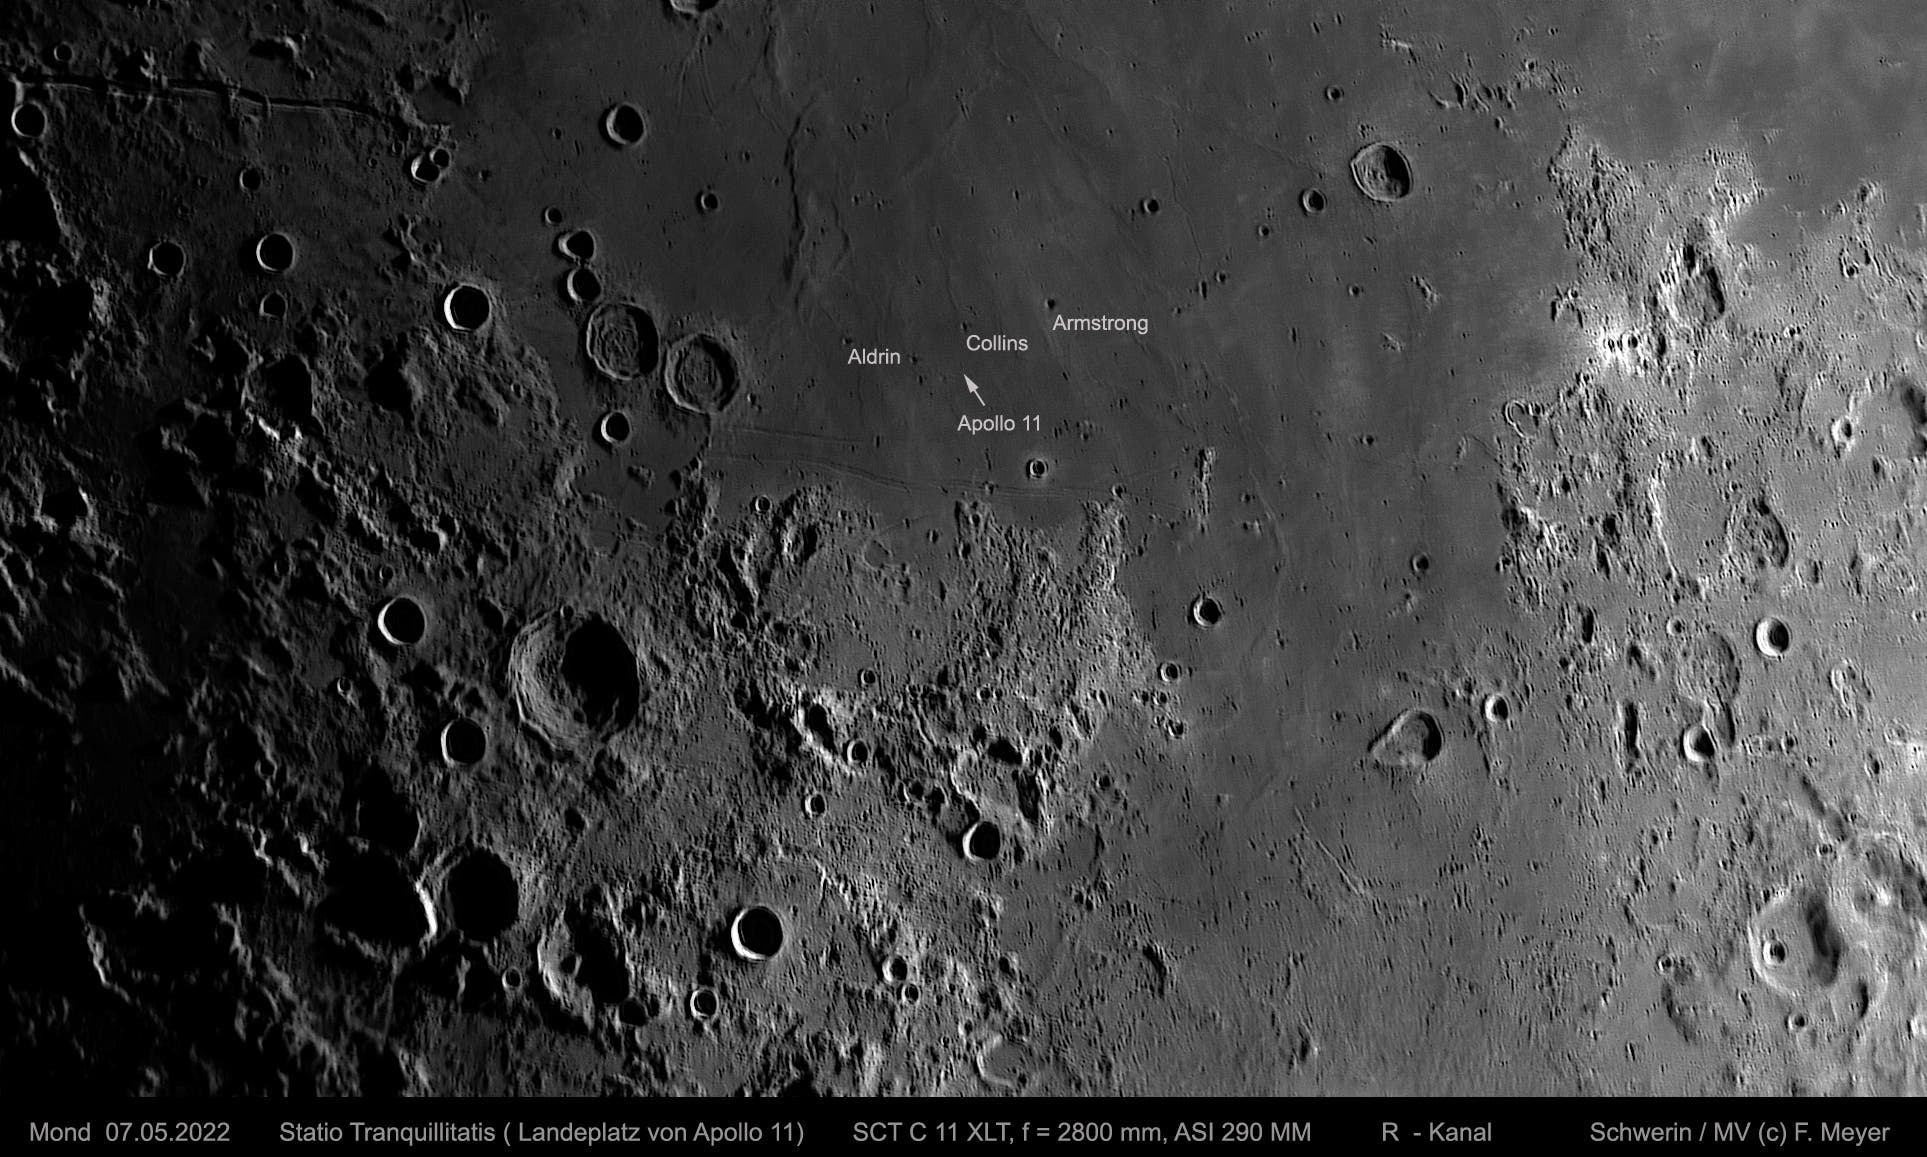 Mond, Statio Tranquillitatis am 7. Mai 2022 (1)